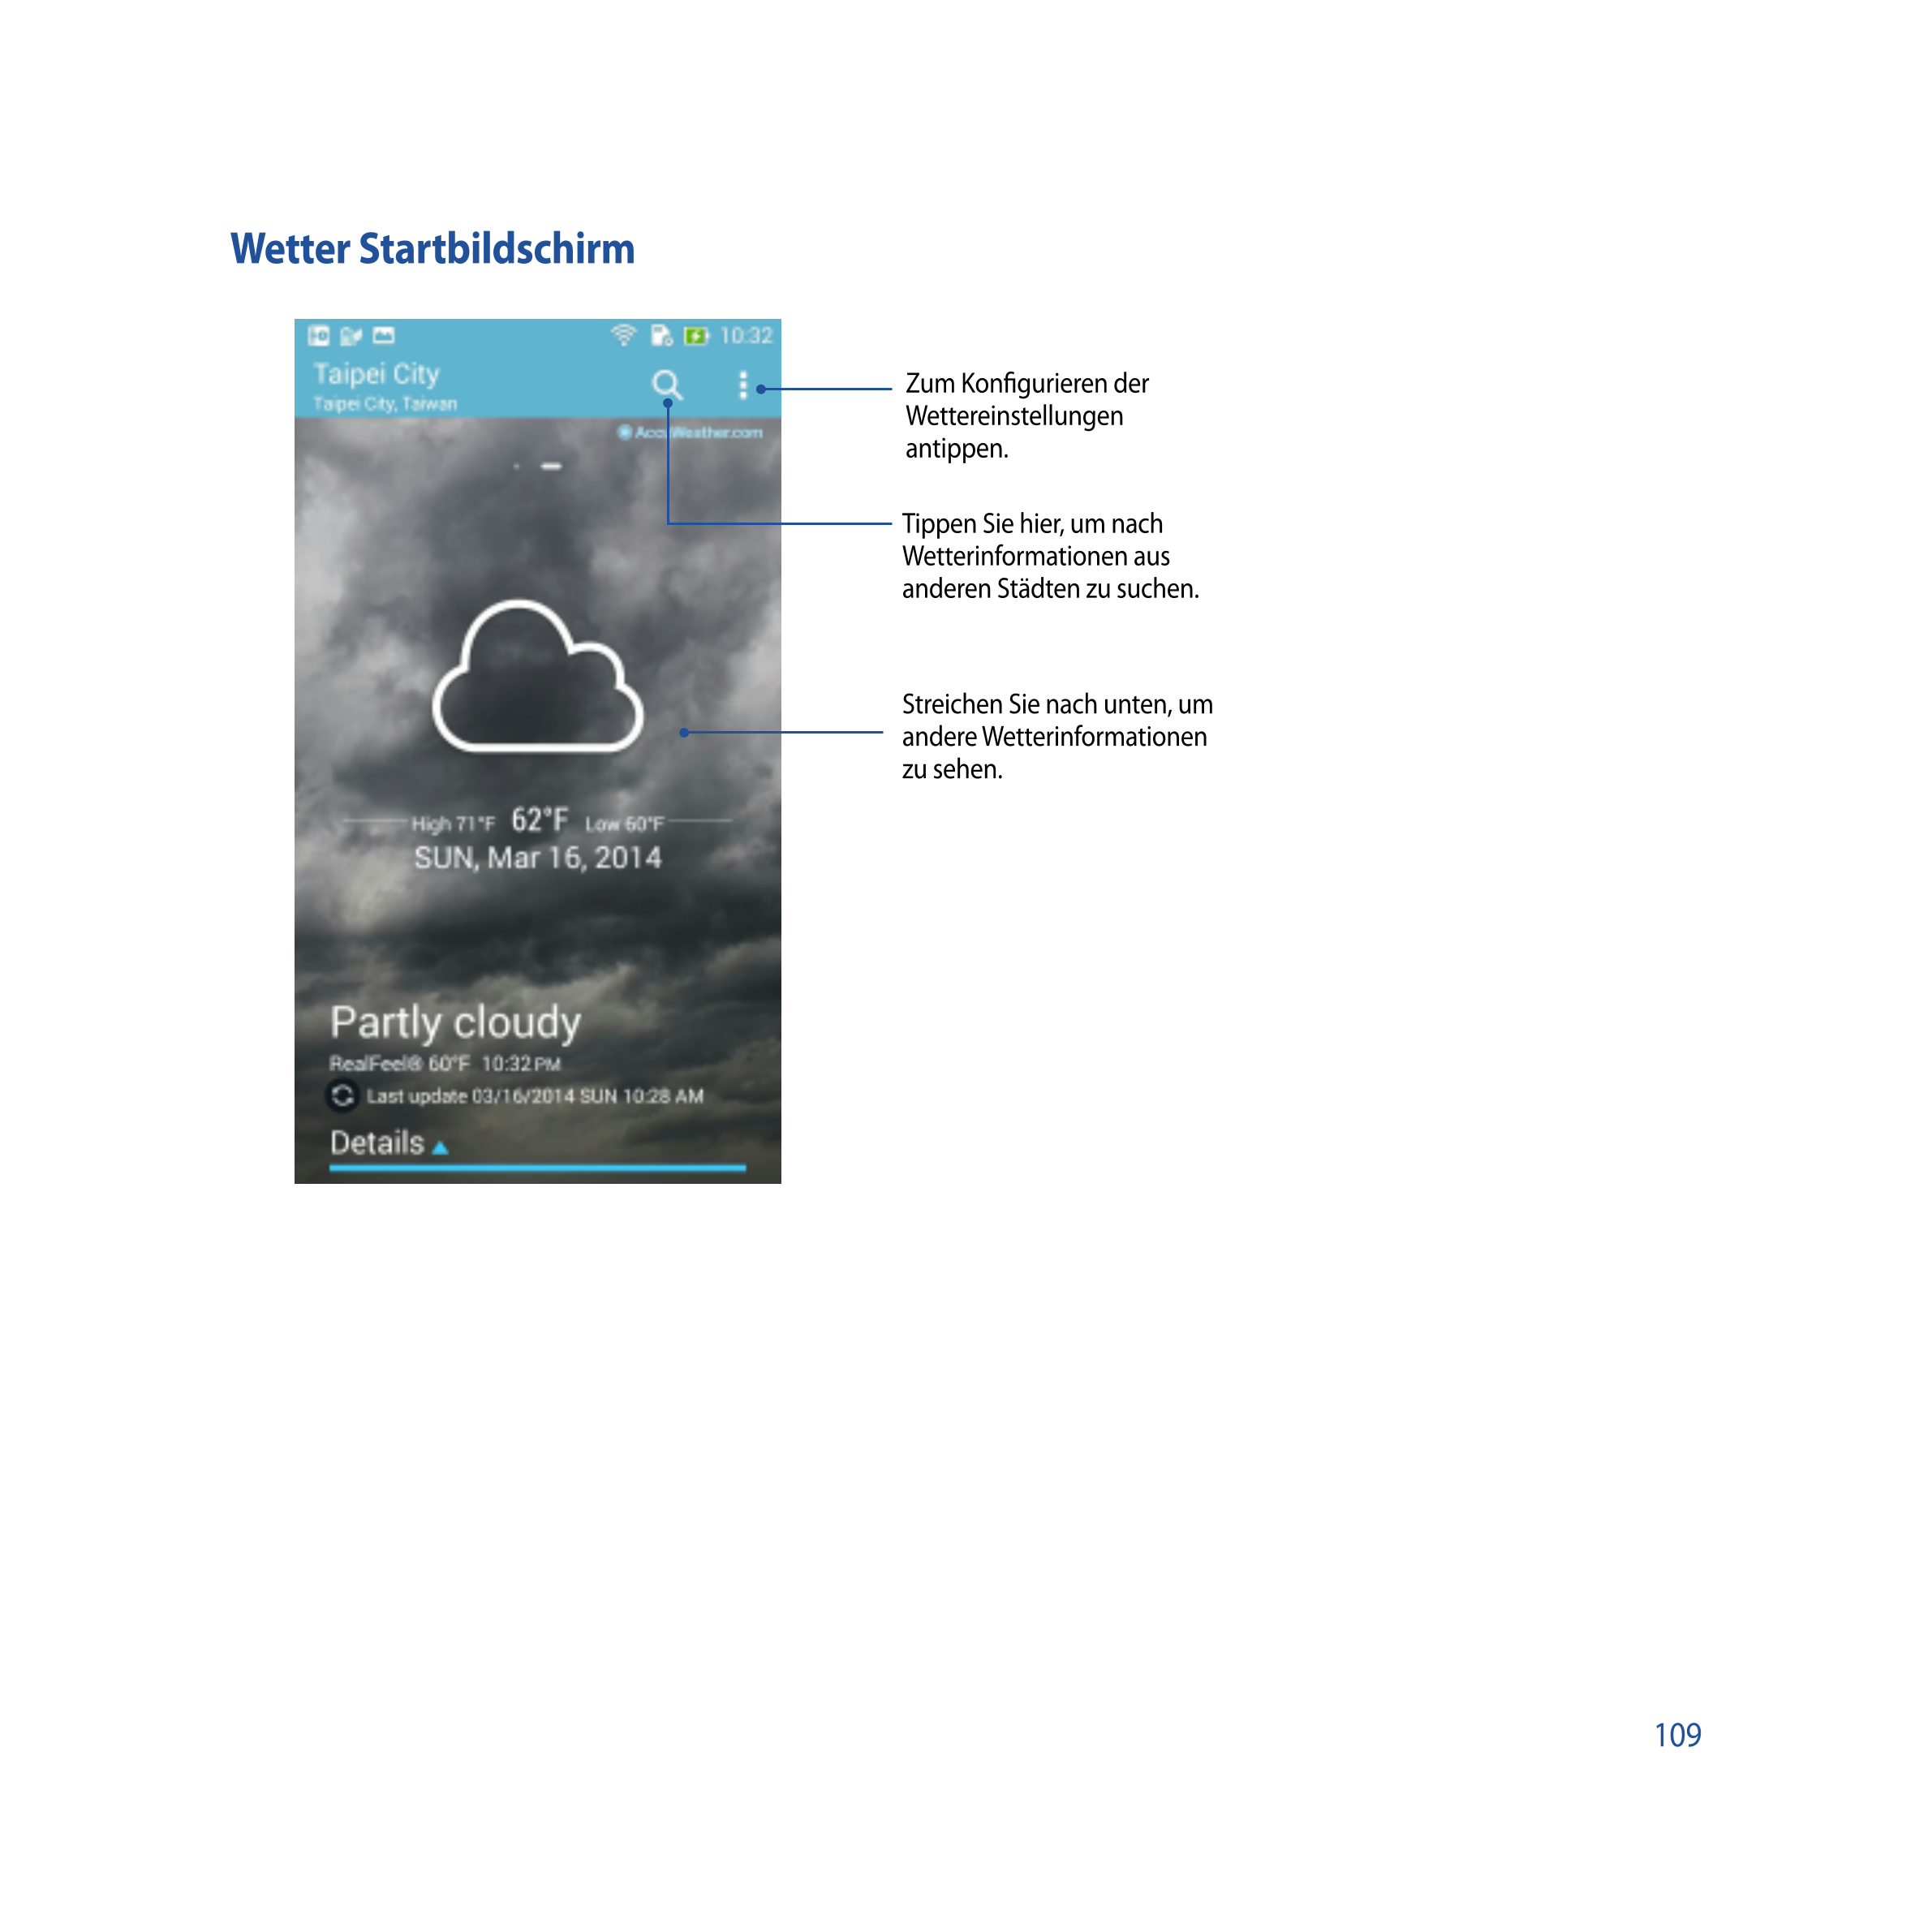 Wetter Startbildschirm
Zum Konﬁgurieren der 
Wettereinstellungen 
antippen.
Tippen Sie hier, um nach 
Wetterinformationen aus 
a